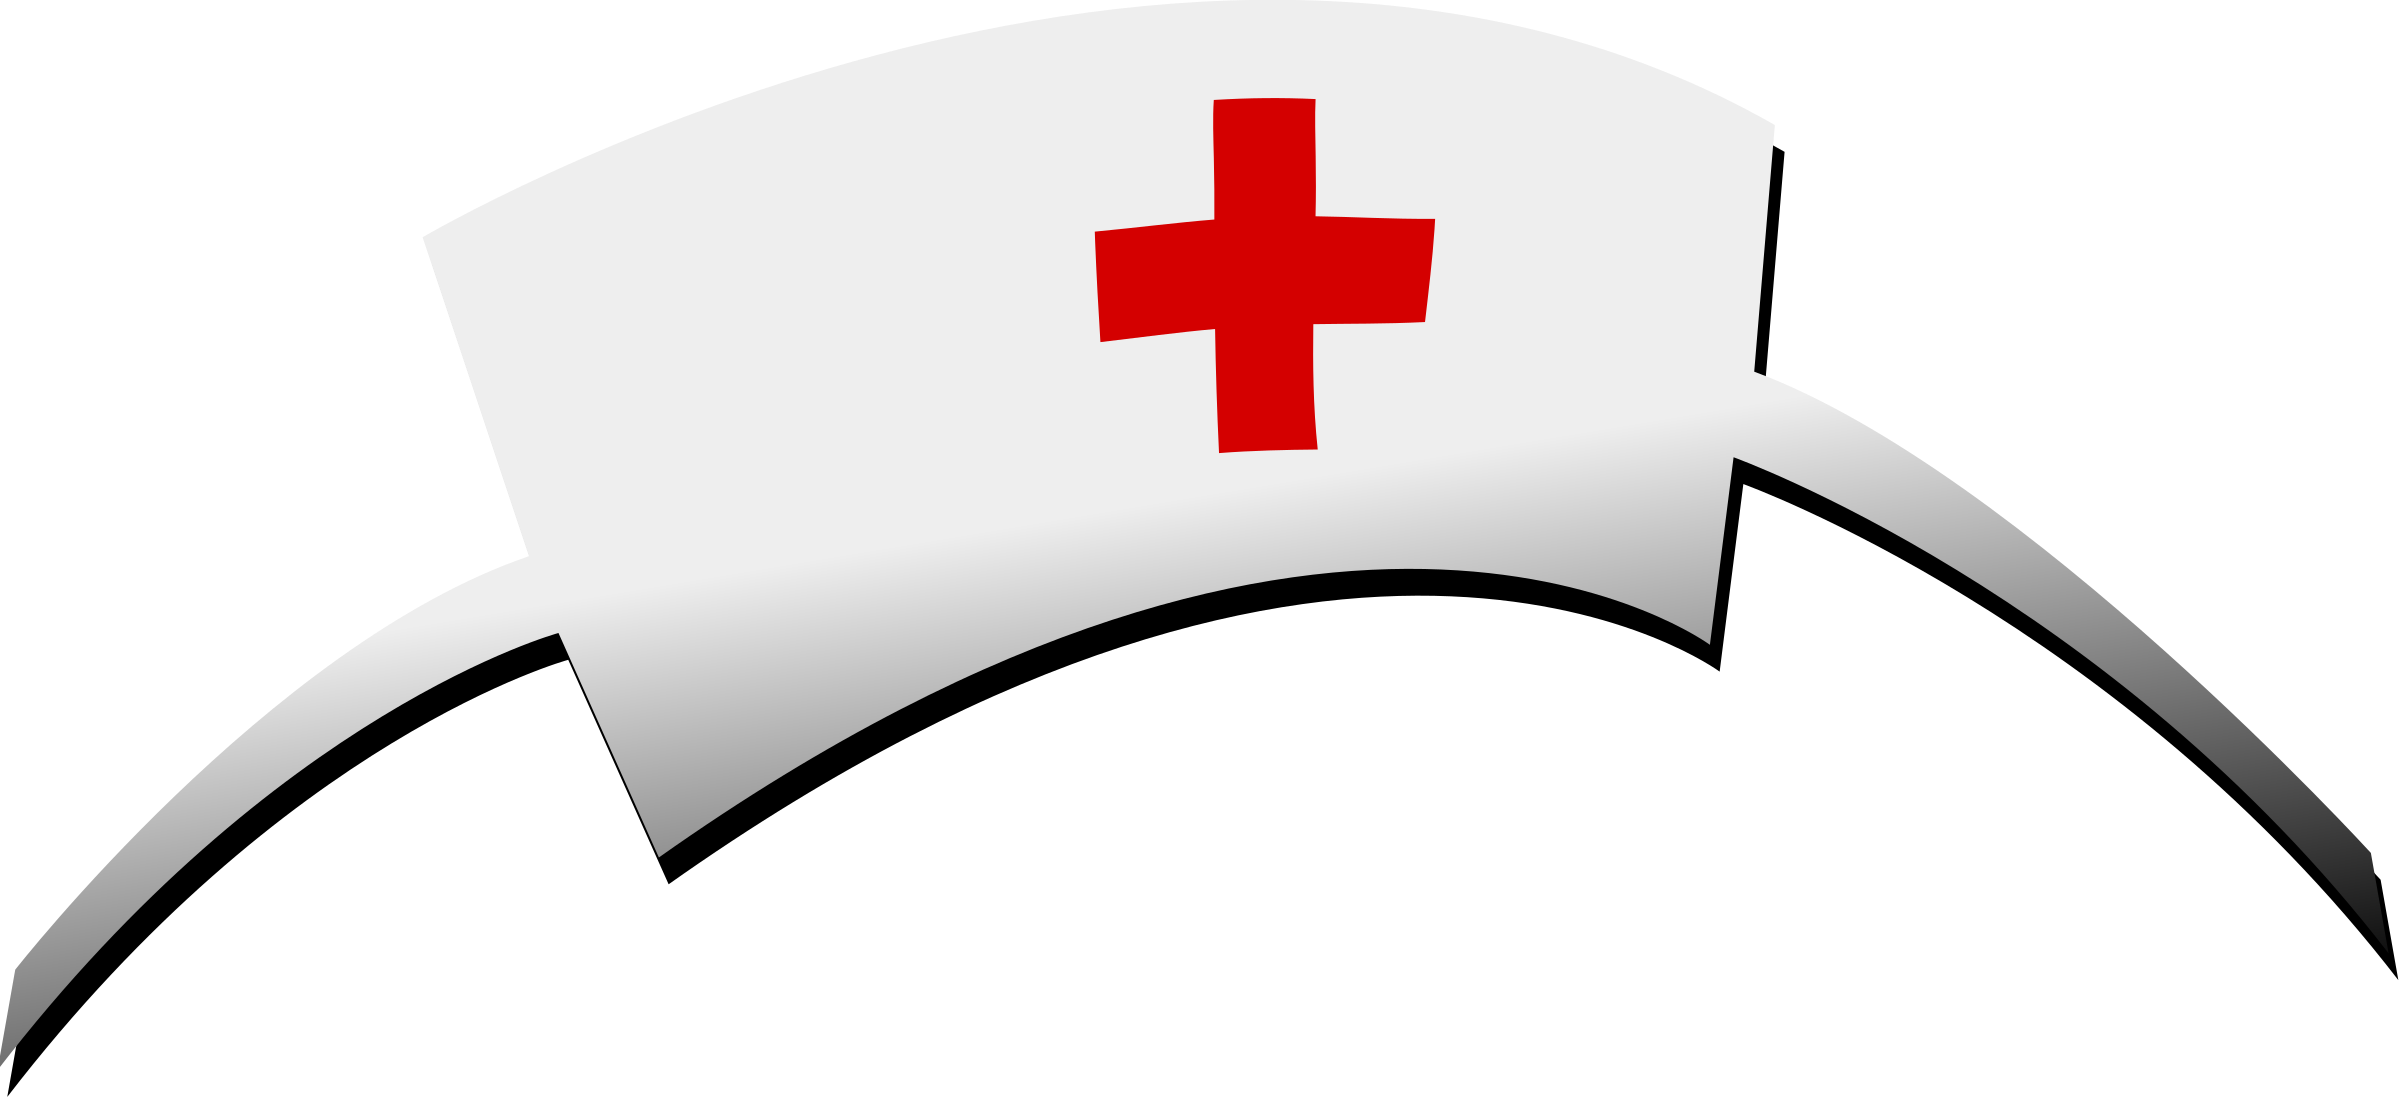 Dr hat. Шапочка медсестры. Шапочка медсестры на прозрачном фоне. Медицинский колпак с красным крестом. Медицинские атрибуты.